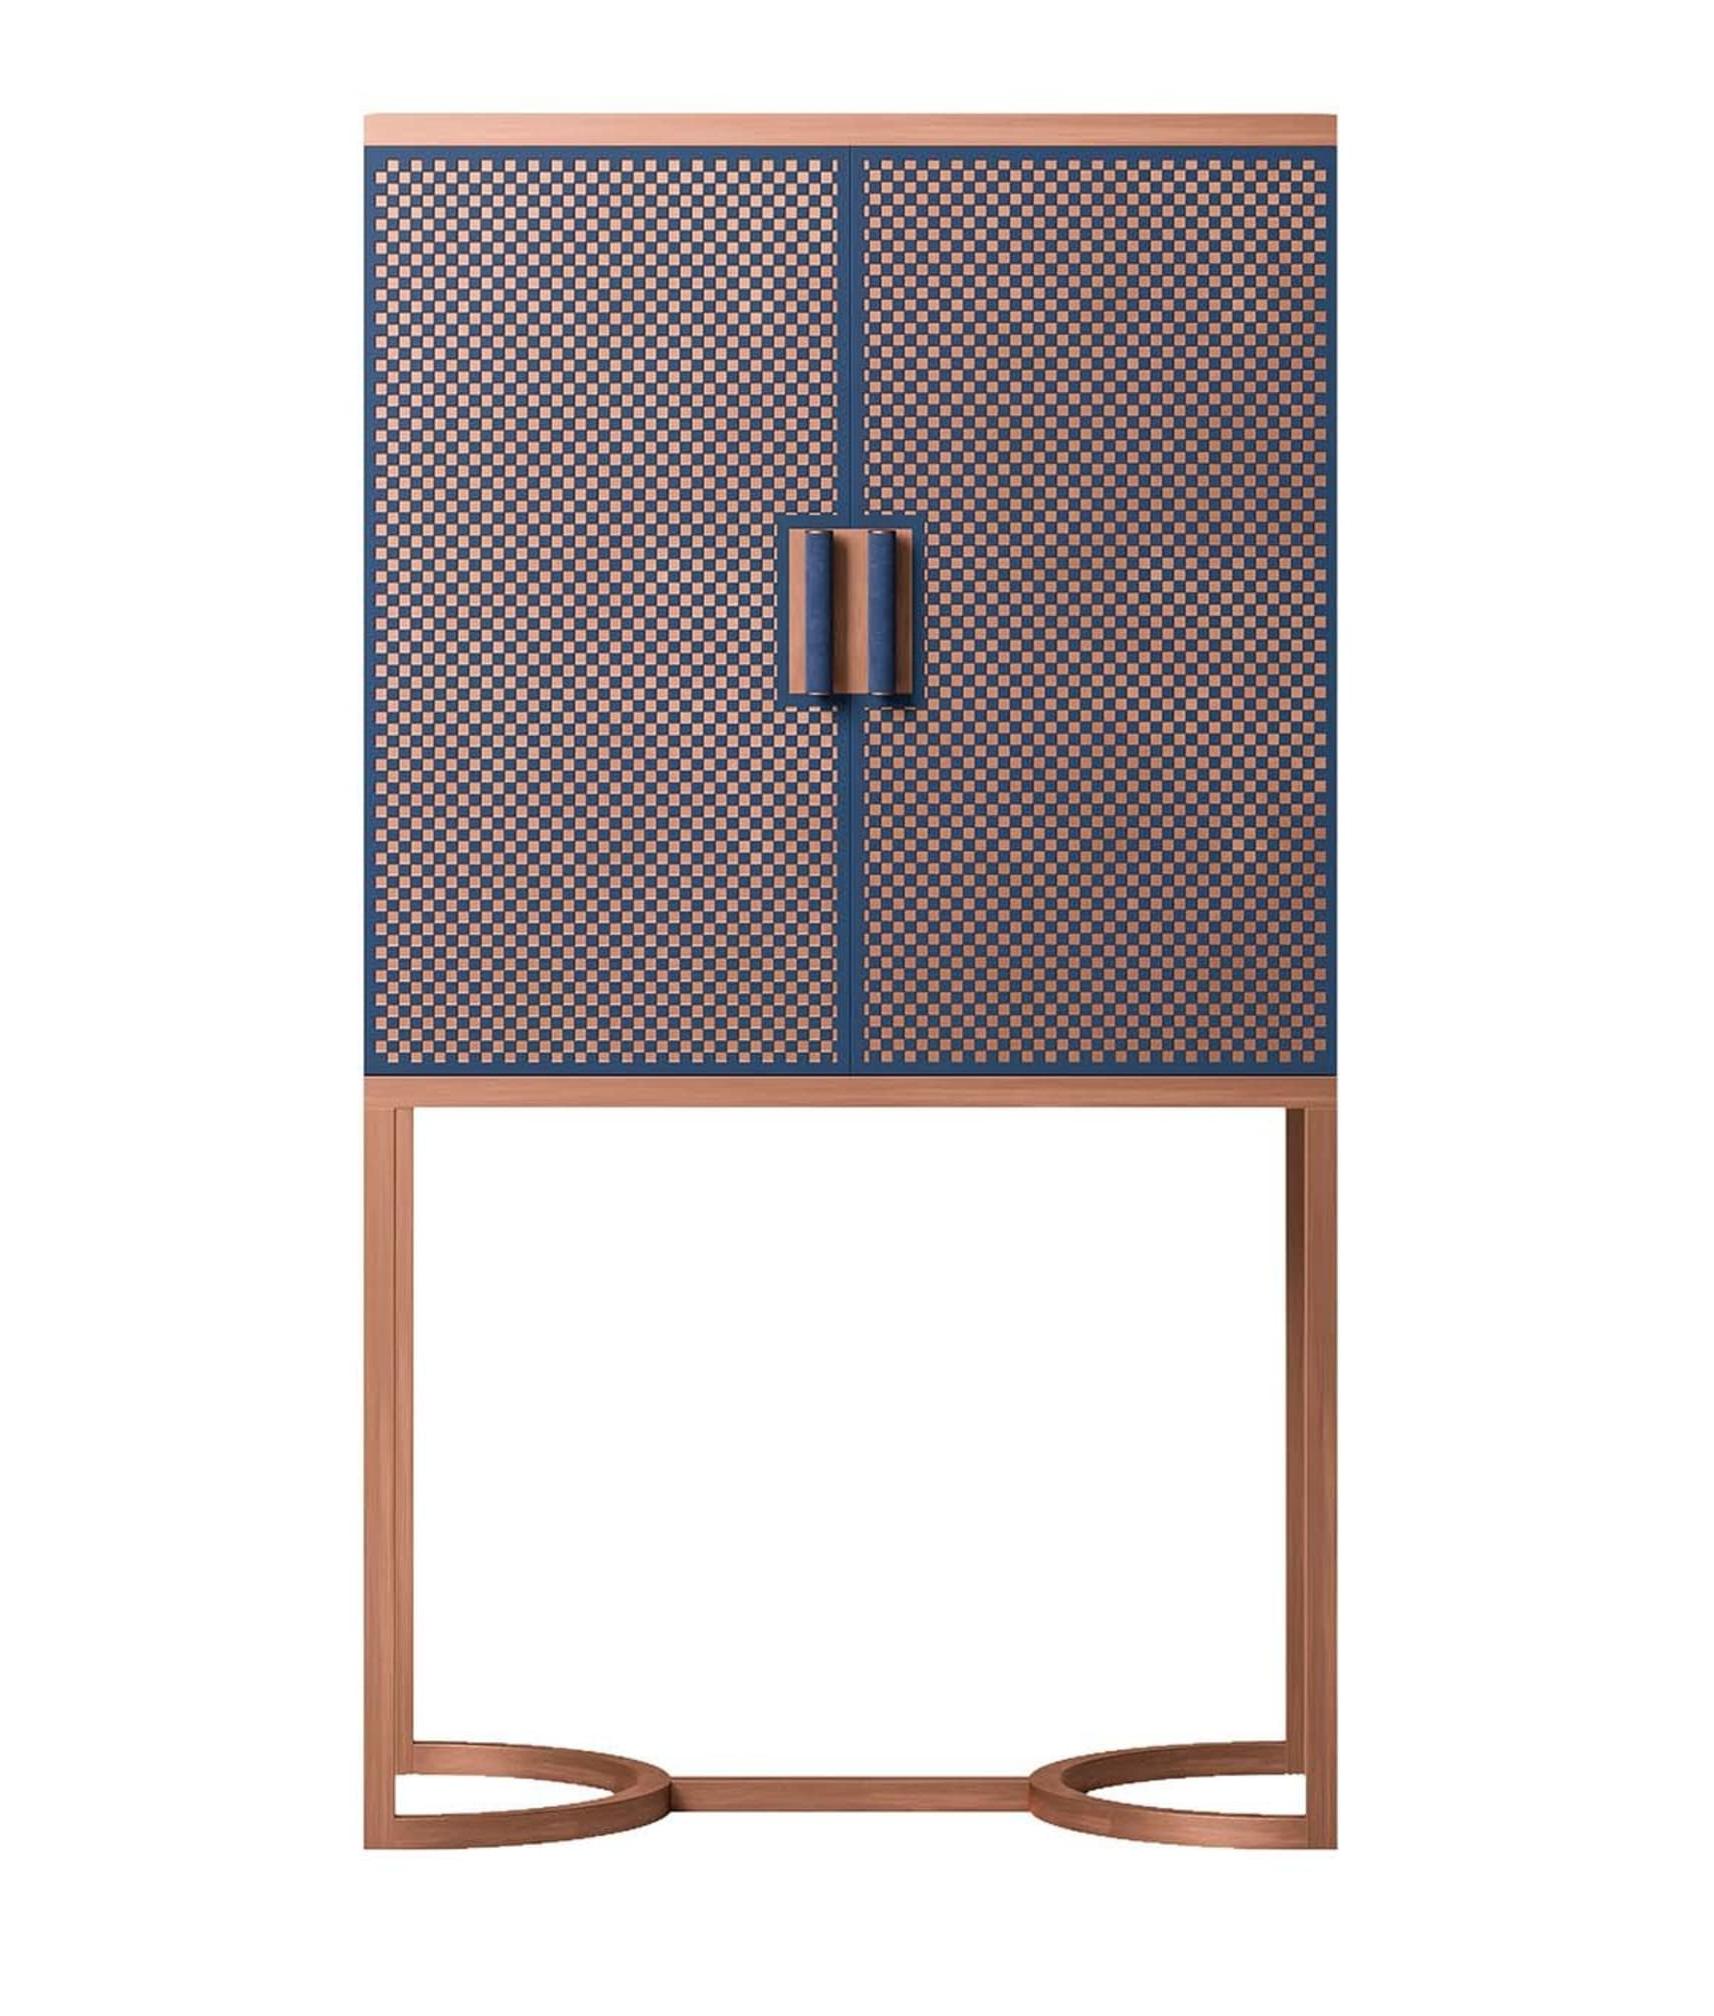 Dual-Tone Blue / Brown Bar Cabinet